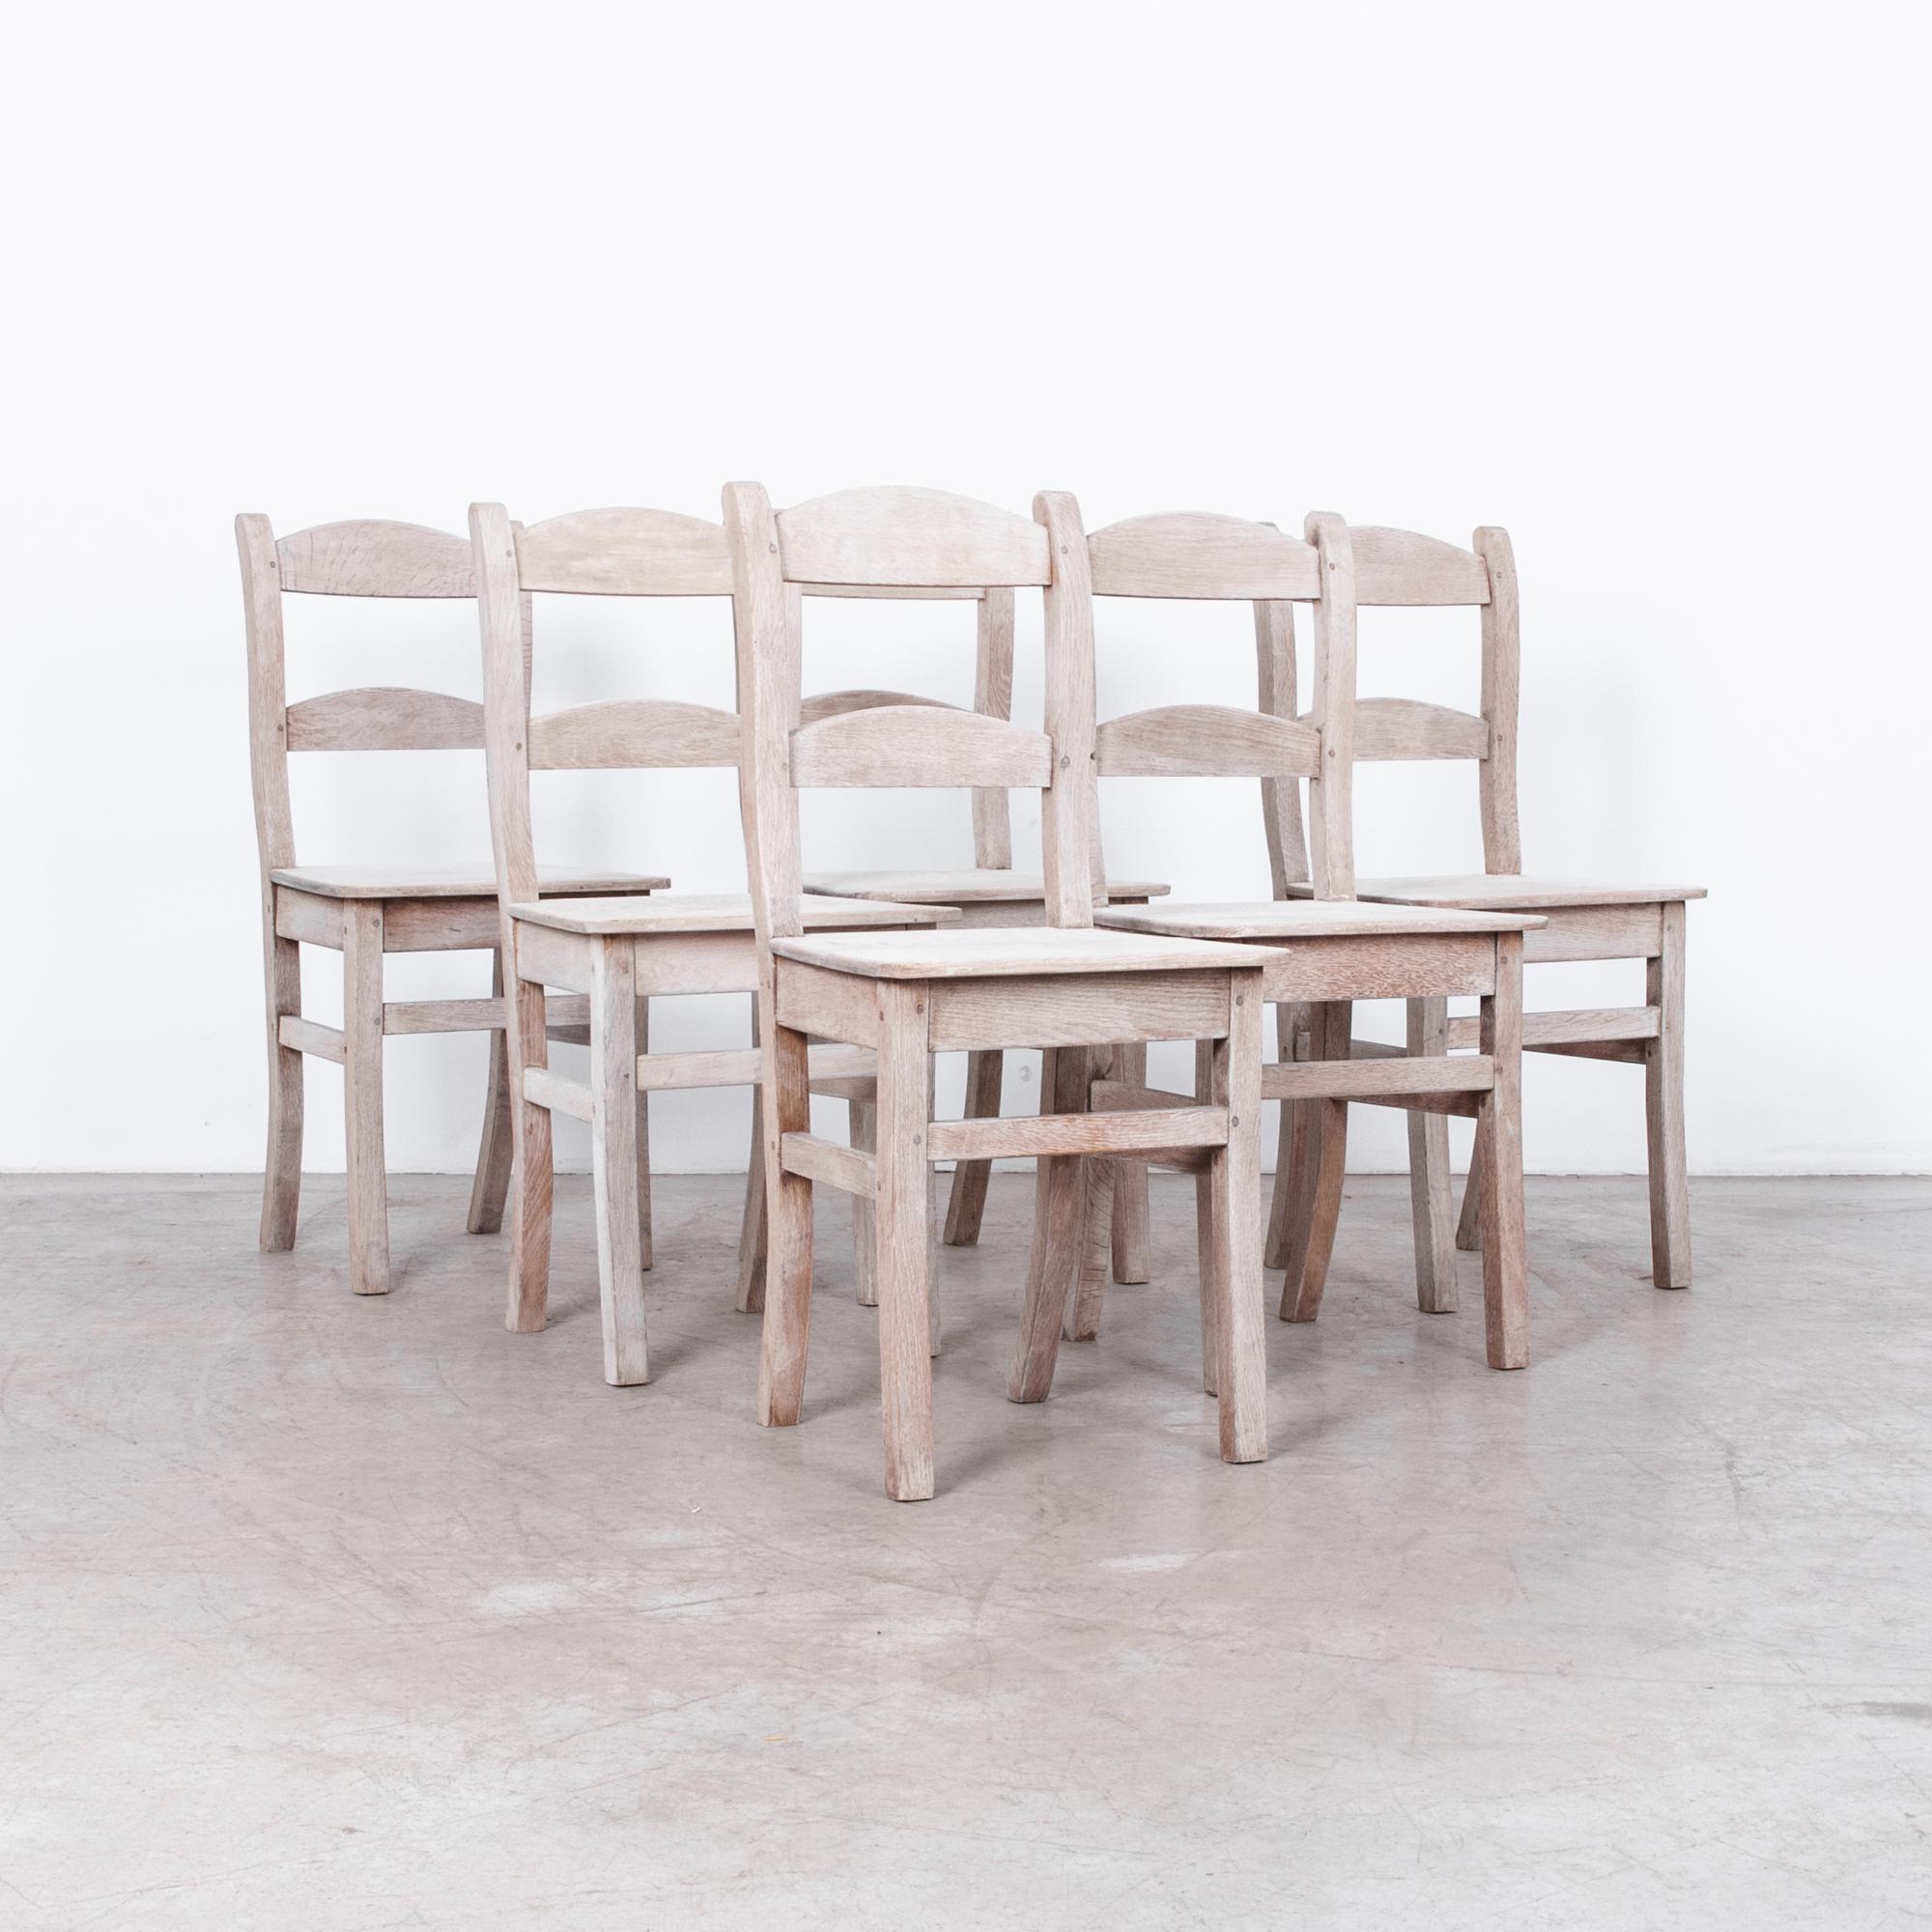 Voici un ajout intemporel à votre salle à manger : le lot de 6 chaises de salle à manger en chêne blanchi belge des années 1900. Fabriquées avec un cadre épuré et entièrement ornées de chêne blanchi, ces chaises exsudent une élégance et un charme